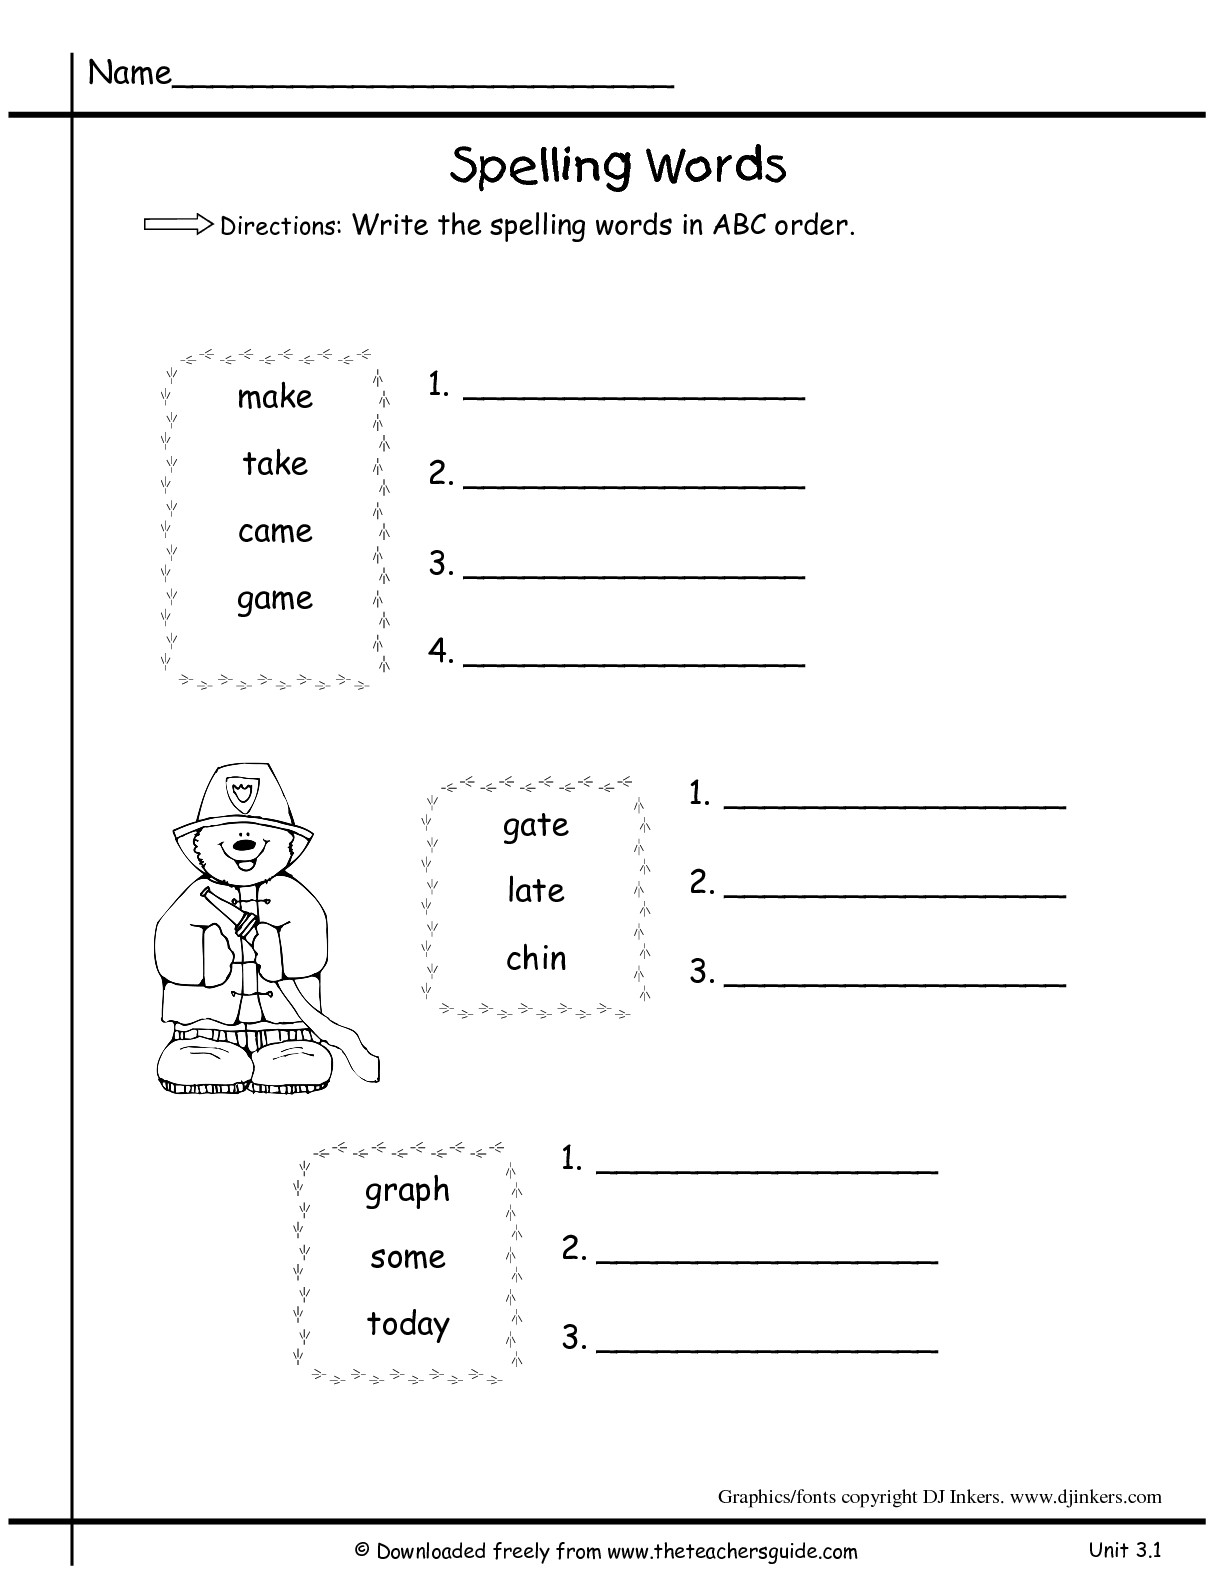 alphabetizing-worksheet-grade-1